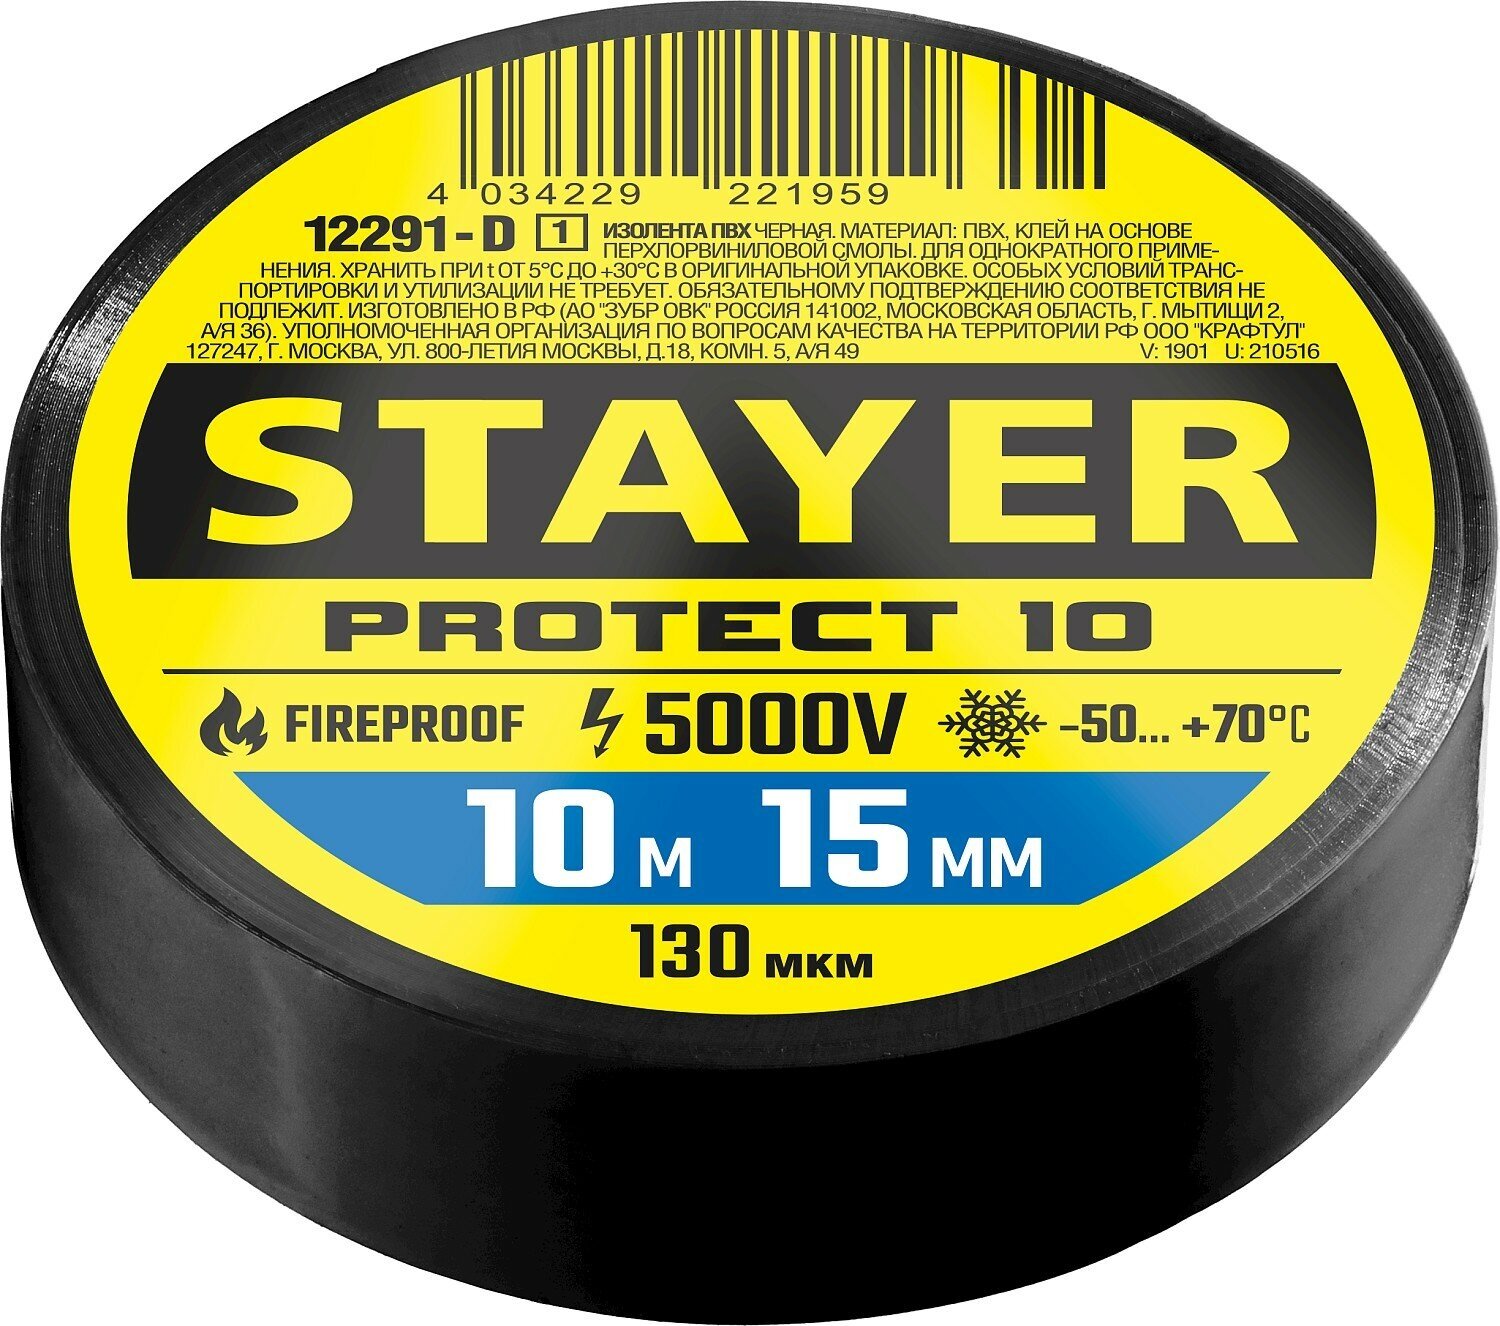 STAYER Protect-10 10м х 15мм 5000В черная Изоляционная лента ПВХ (12292-D)